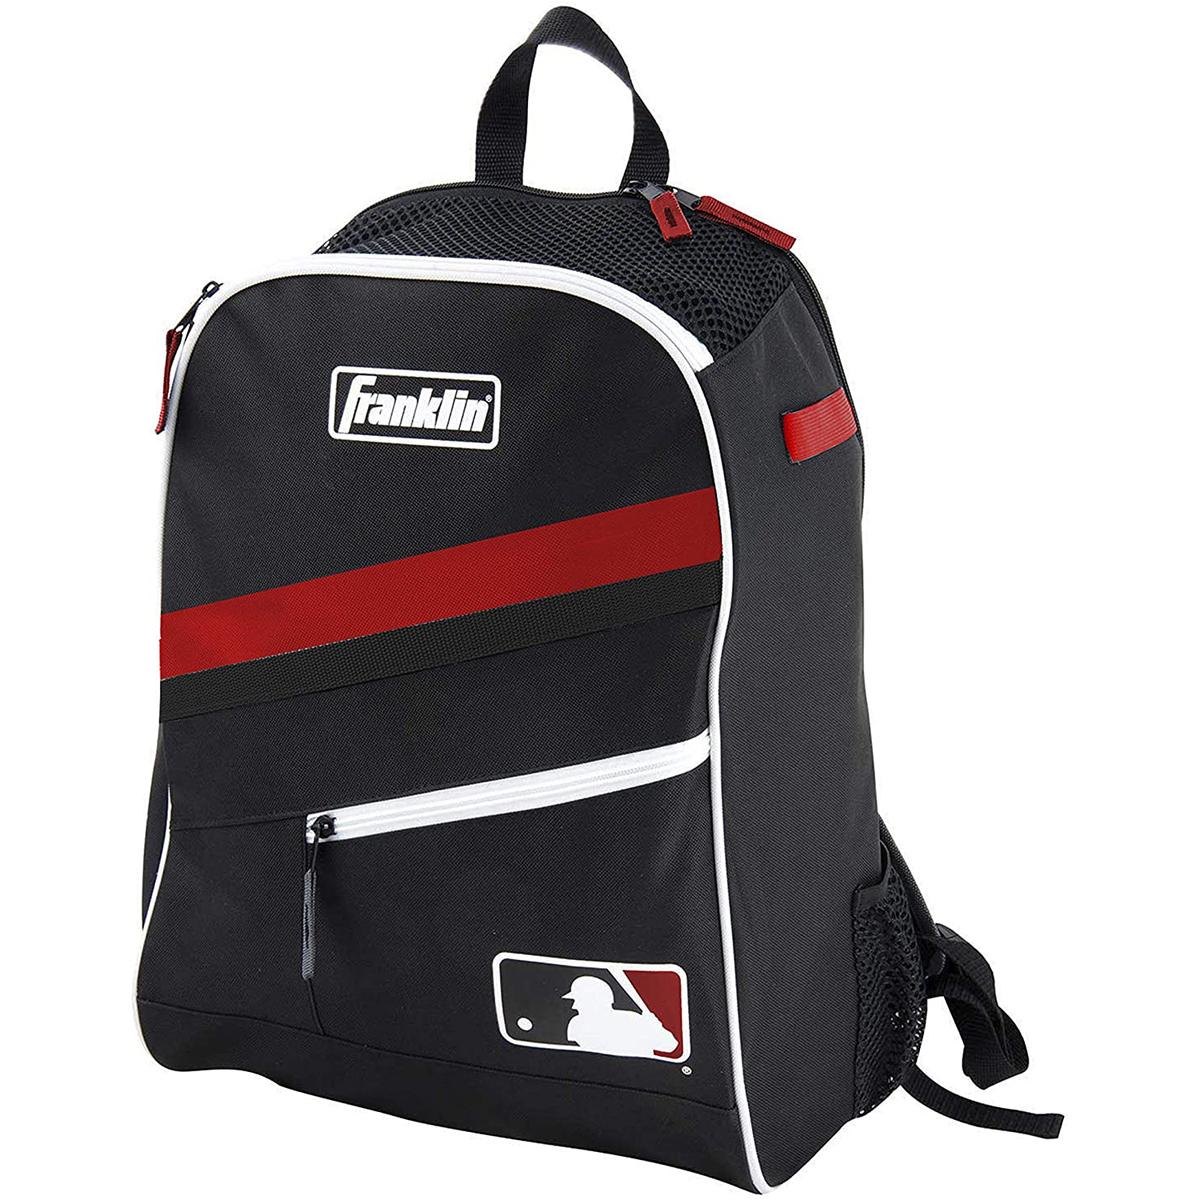 Franklin Sports MLB Batpack Bag for $8.87